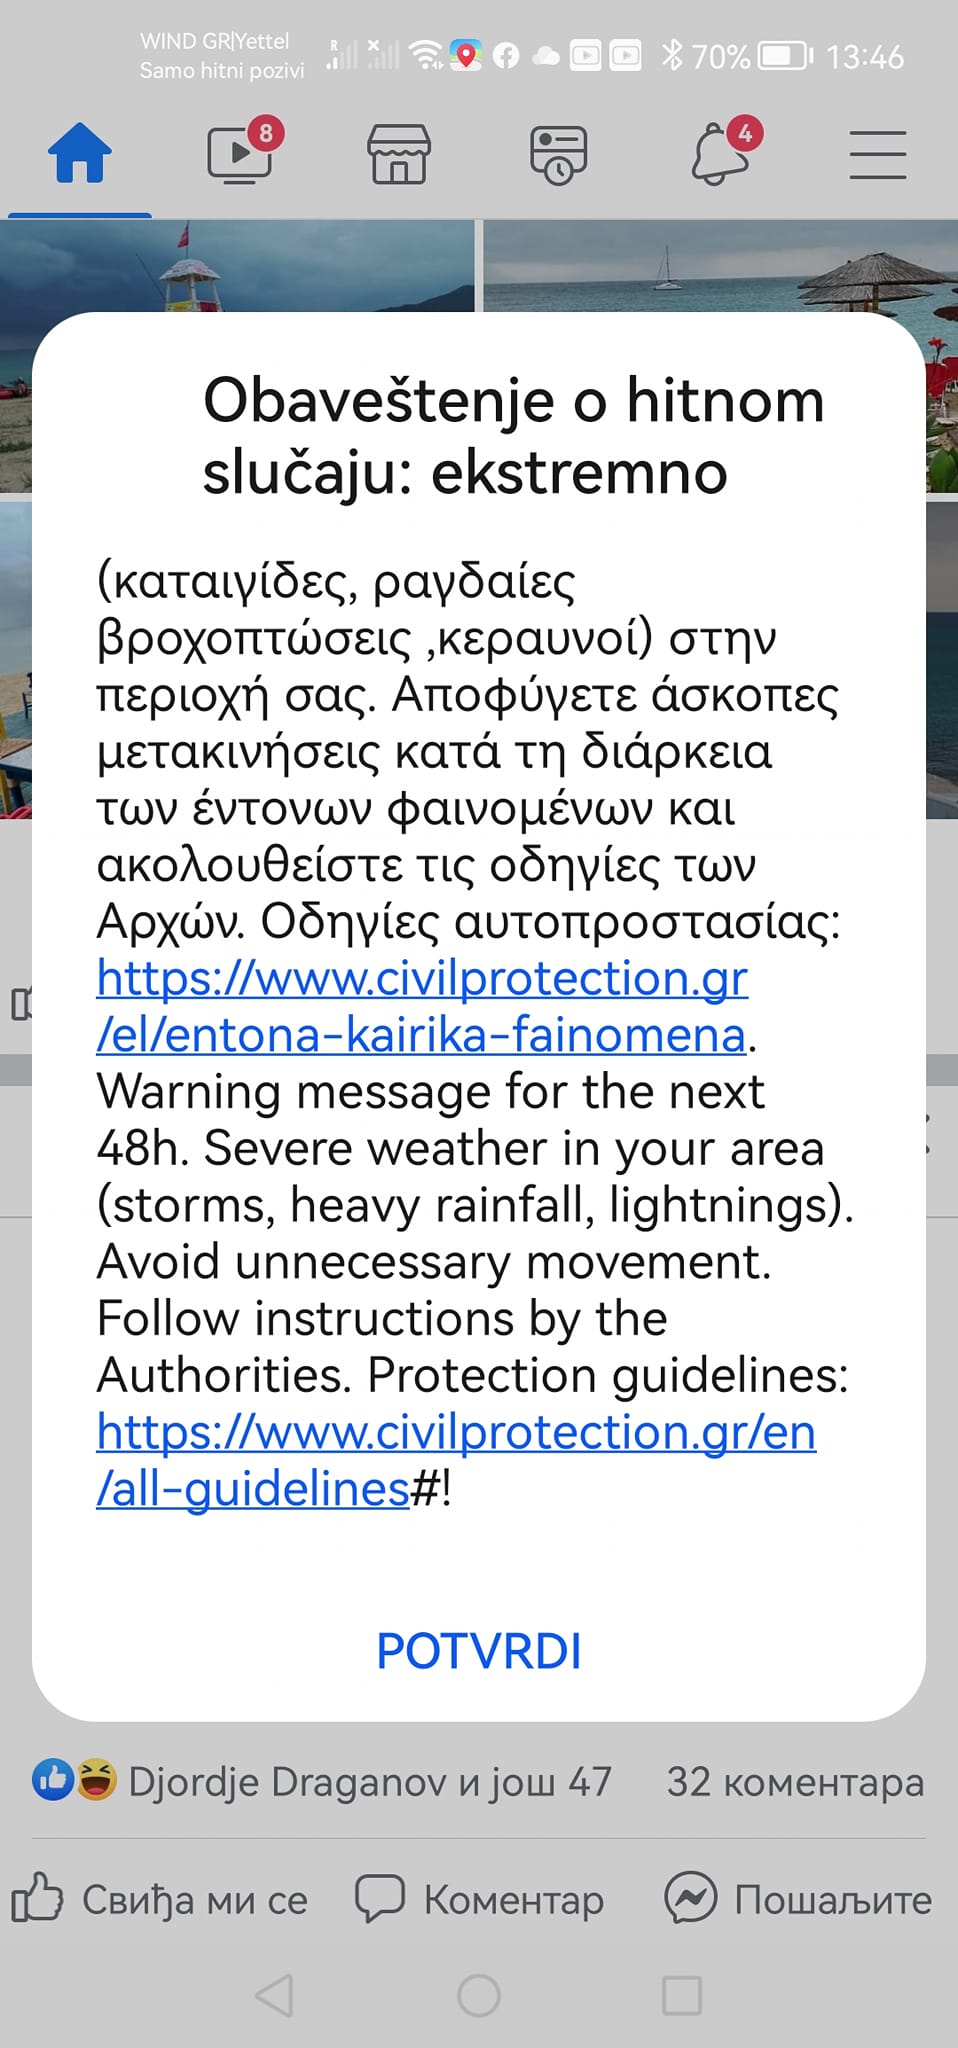 "Obaveštenje o hitnom slučaju - ekstremno": Turistima u Grčkoj stižu poruke upozorenja na olujno nevreme 2